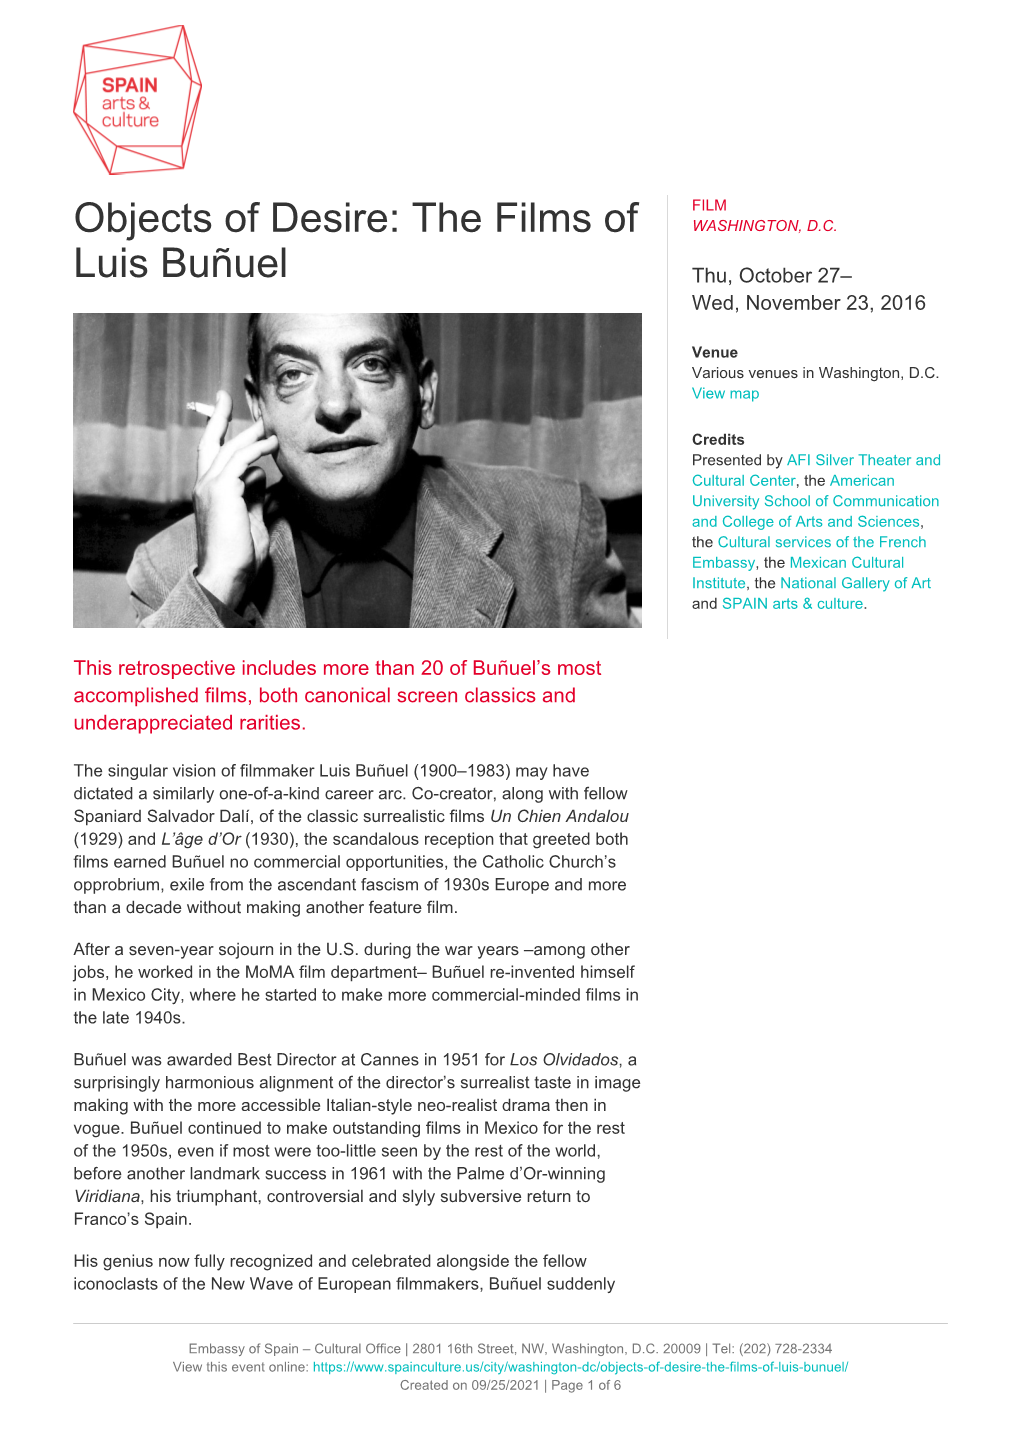 Objects of Desire: the Films of Luis Buñuel